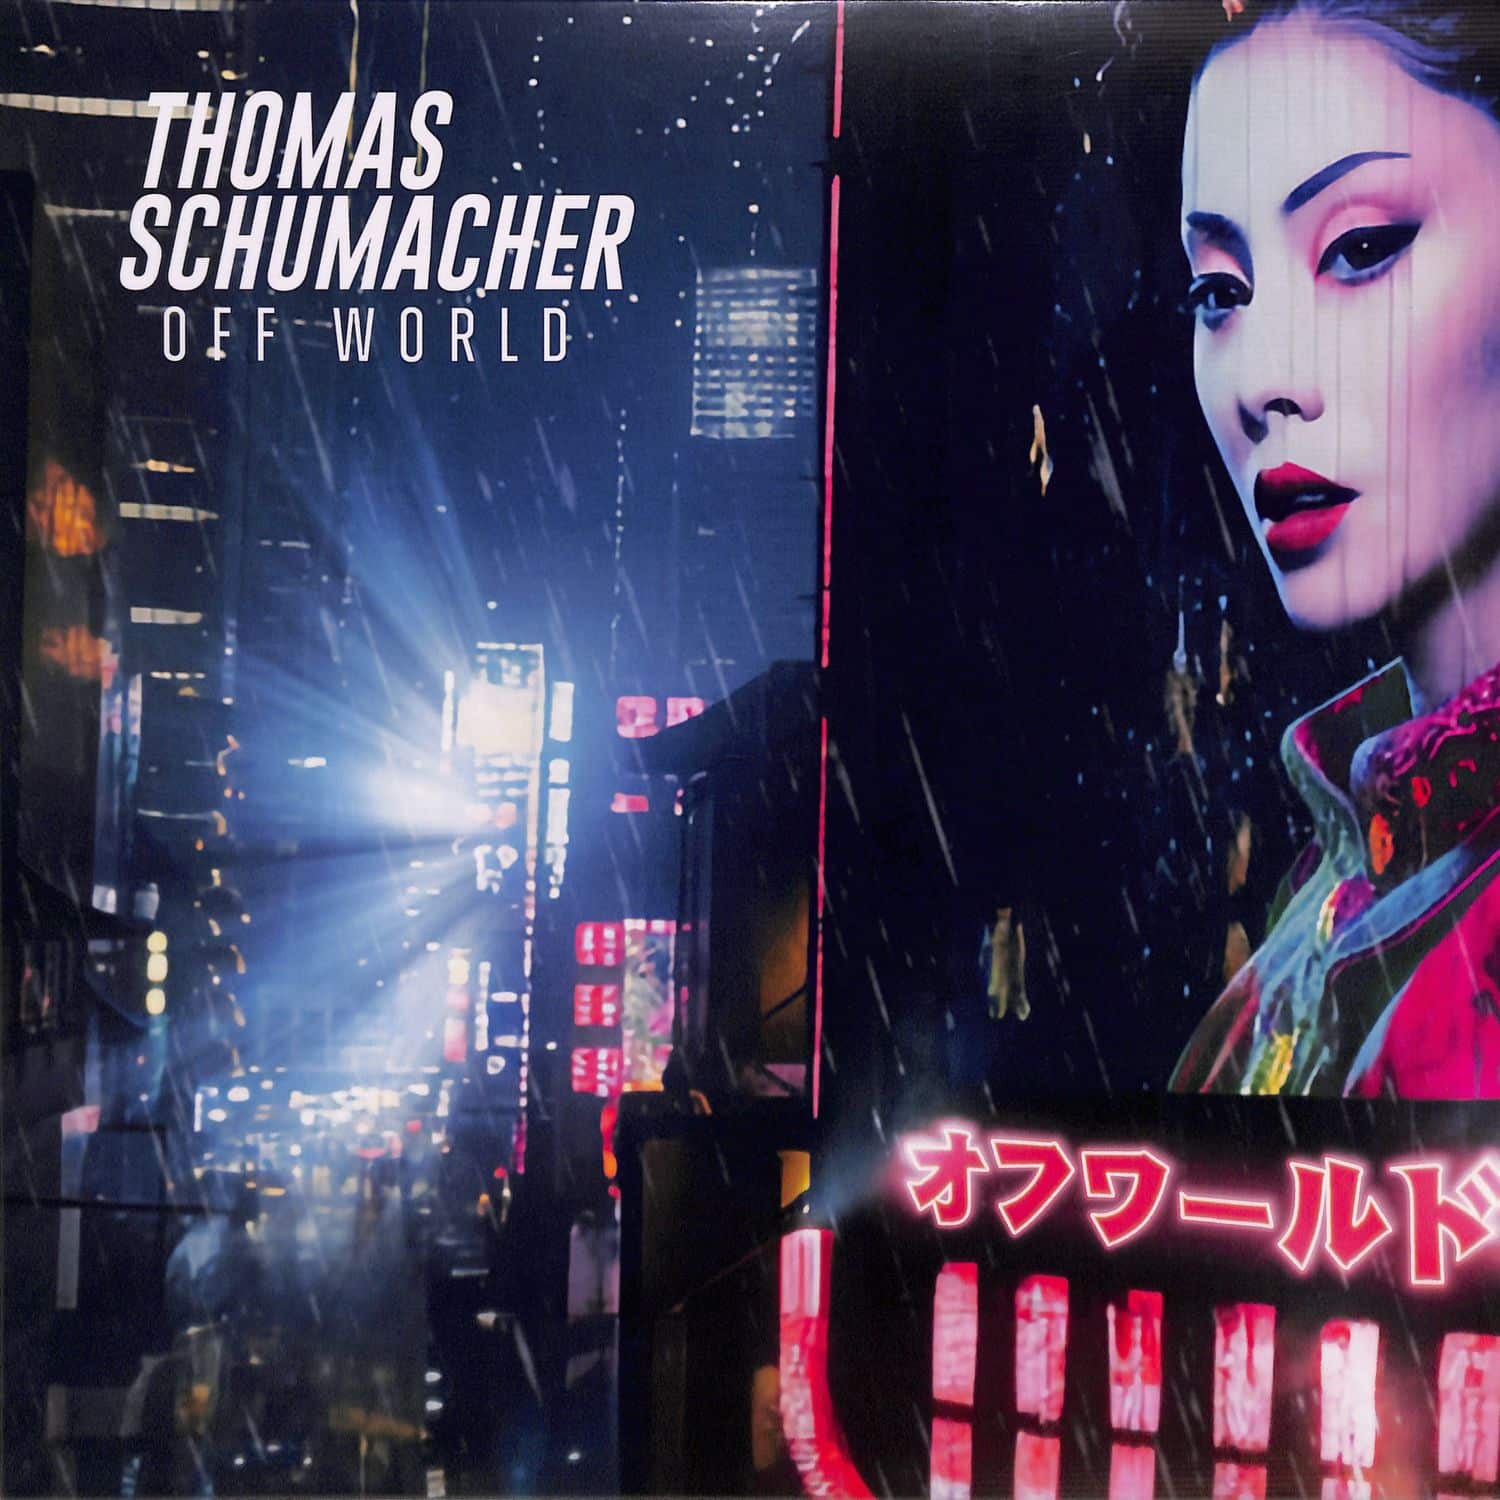 Thomas Schumacher - OFF WORLD